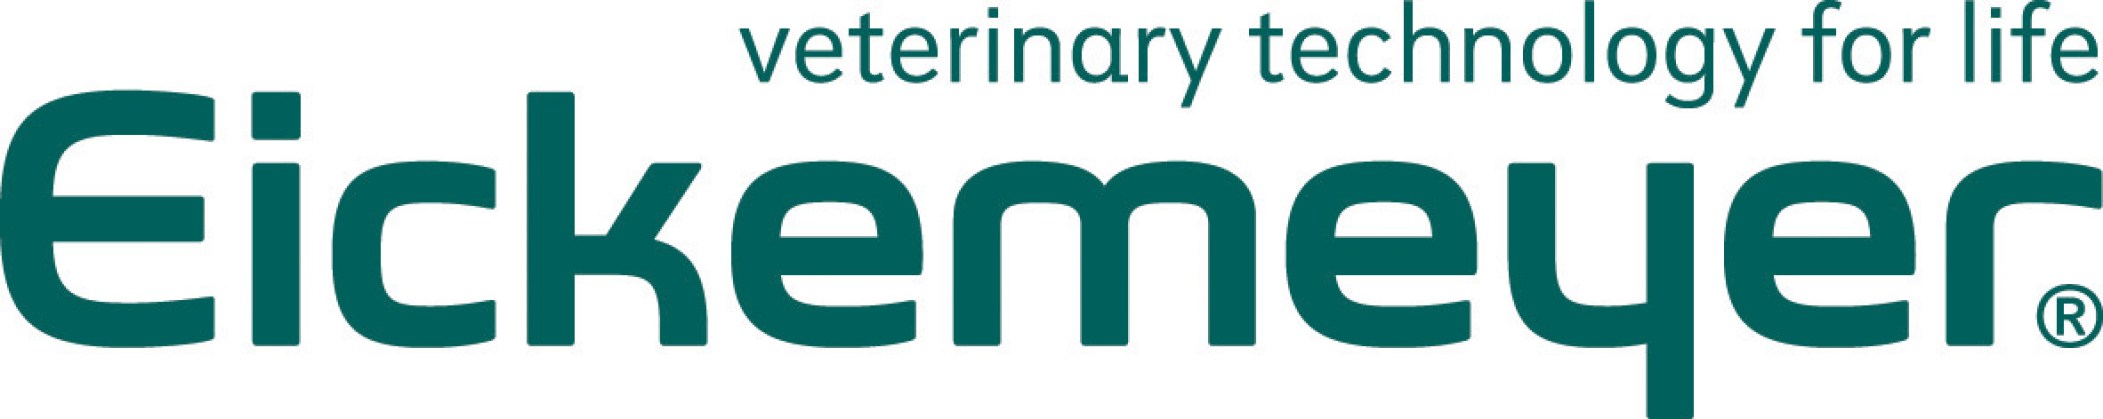 Eickemeyer-Logo36